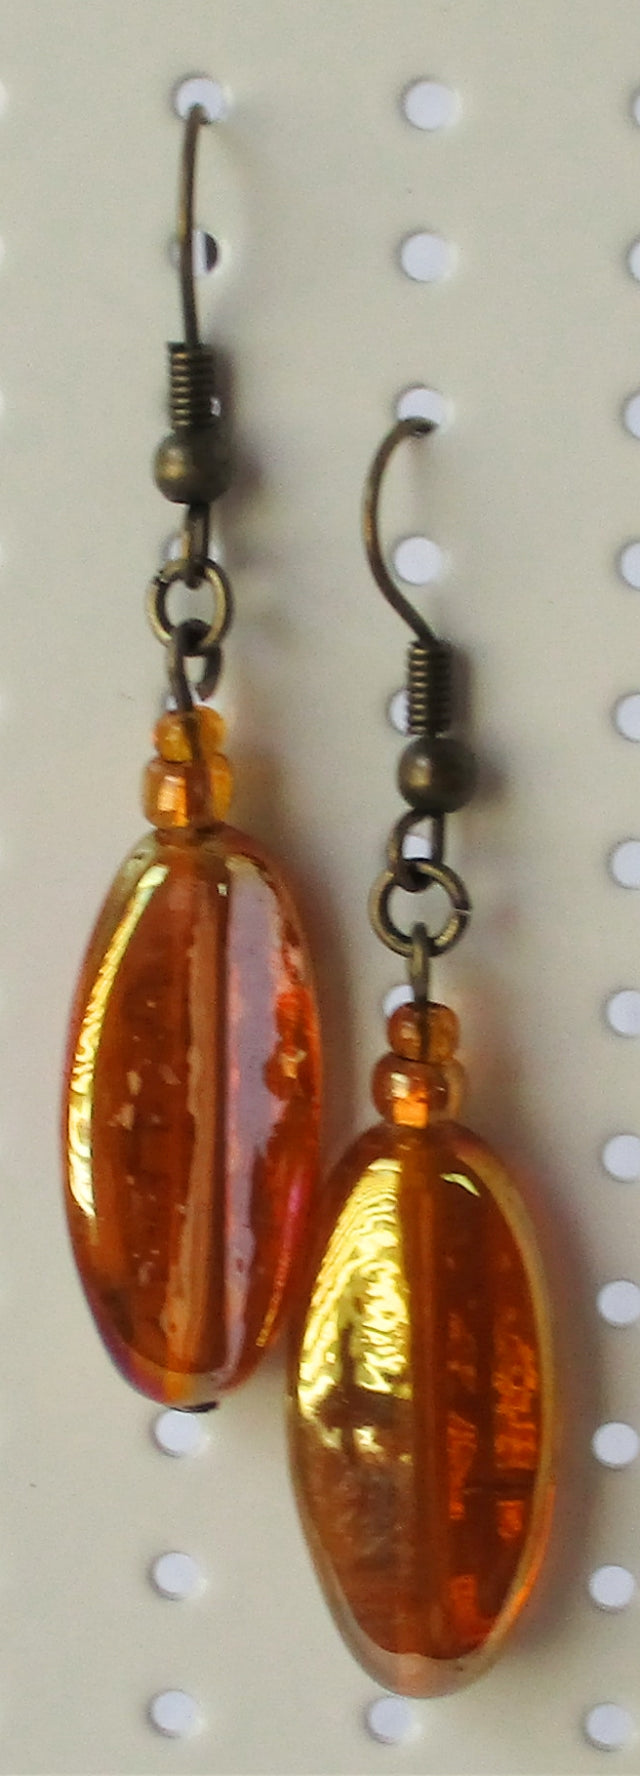 Orange Drop Earrings - Juicybeads Jewelry